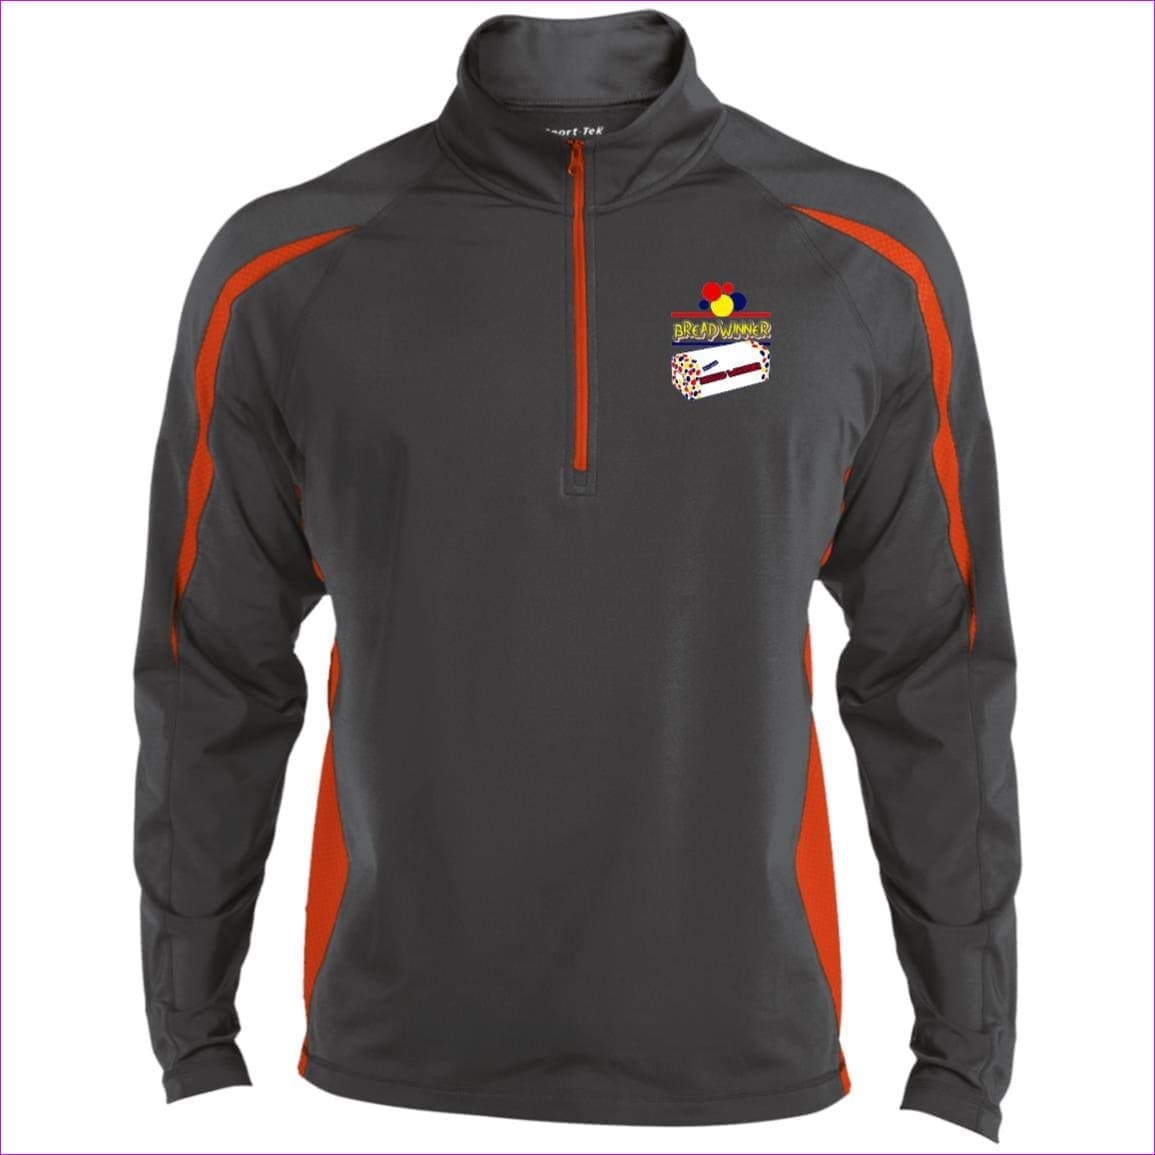 Charcoal Grey/Deep Orange Bread Winner Men's Sport Wicking Colorblock 1/2 Zip Sweatshirt - men's sweatshirt at TFC&H Co.